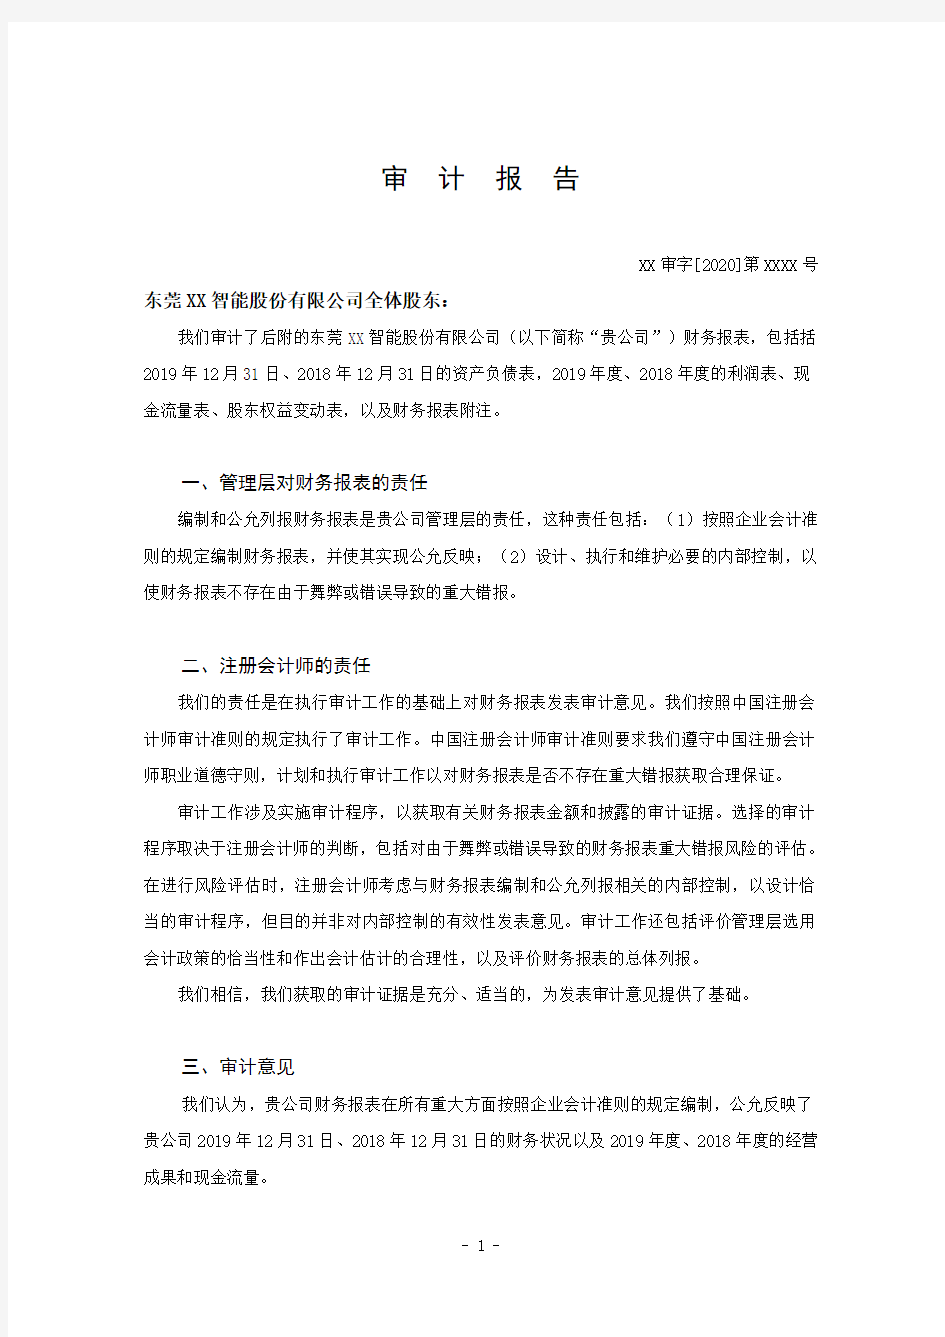 XX智能股份有限公司财务报表审计报告及附注(最新)